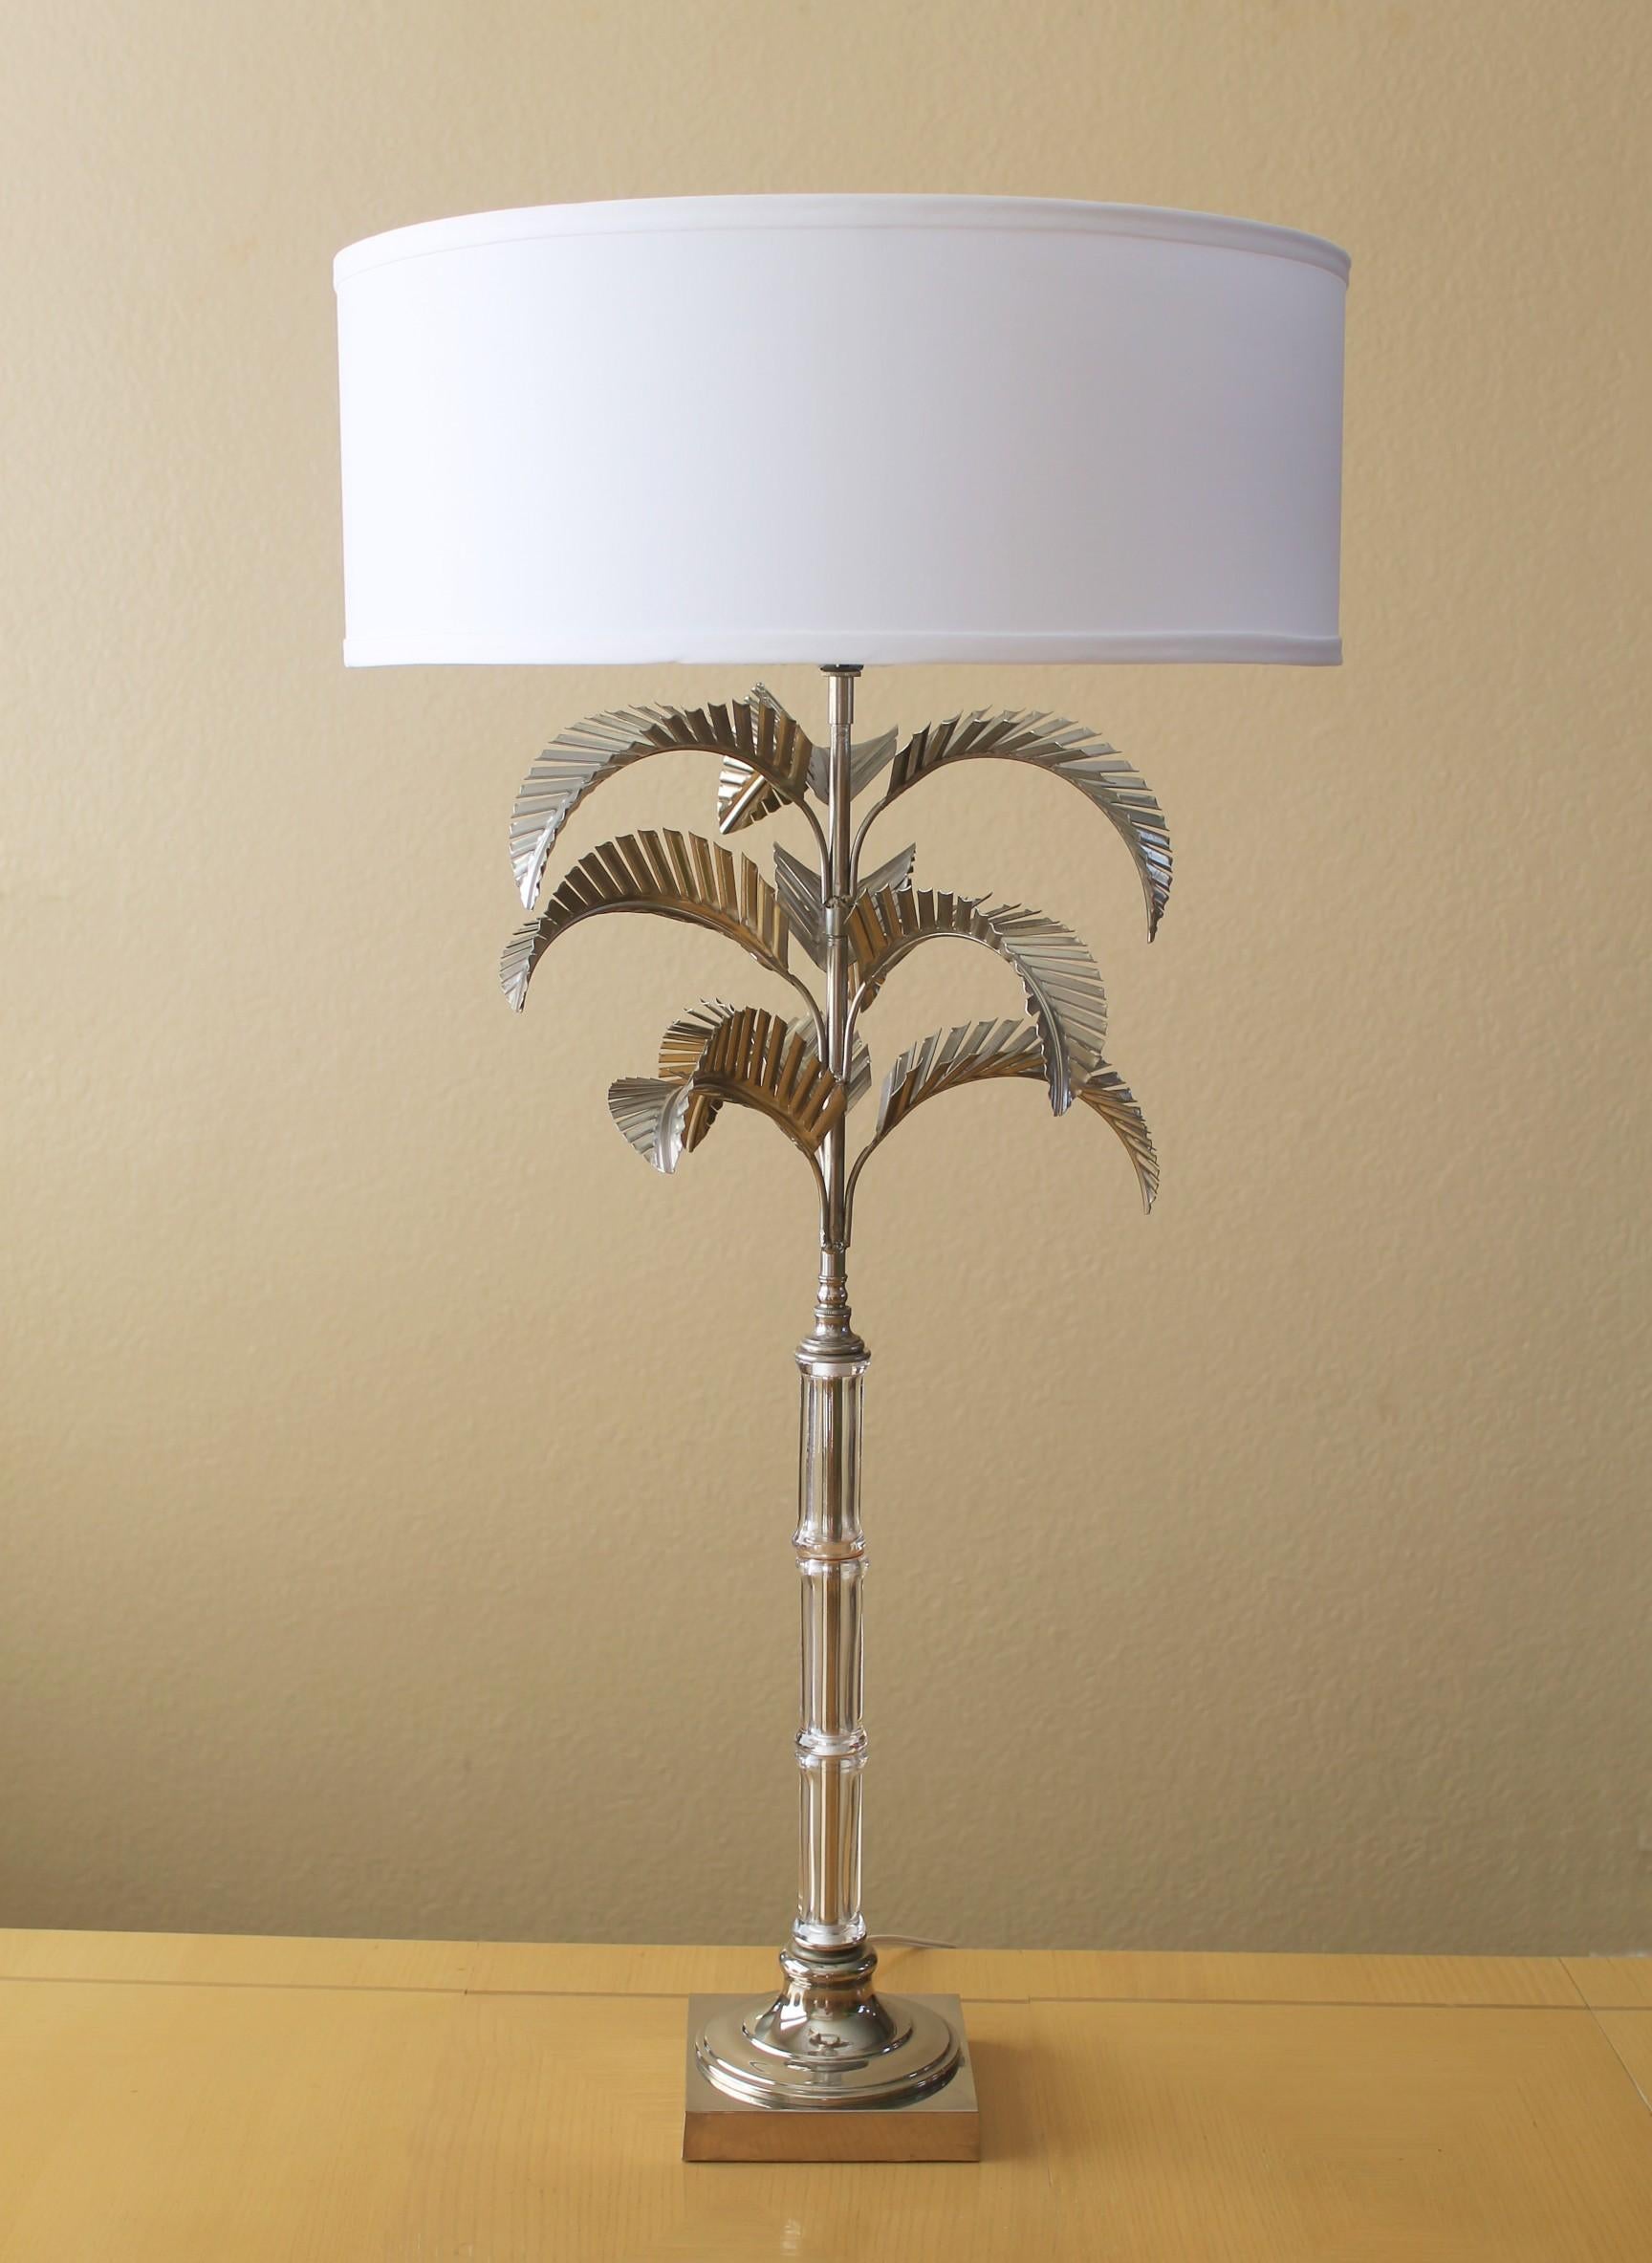 MAGNIFIQUE !


Métal travaillé monumental
Lampe à poser palmier
Par Chapman Manufacturing

Un design incroyable !
Minty !

Décoration Palm Beach Regency ! 

Voici l'incroyable et très convoitée lampe de table Palm Tree de Chapman Manufacturing.  Ce